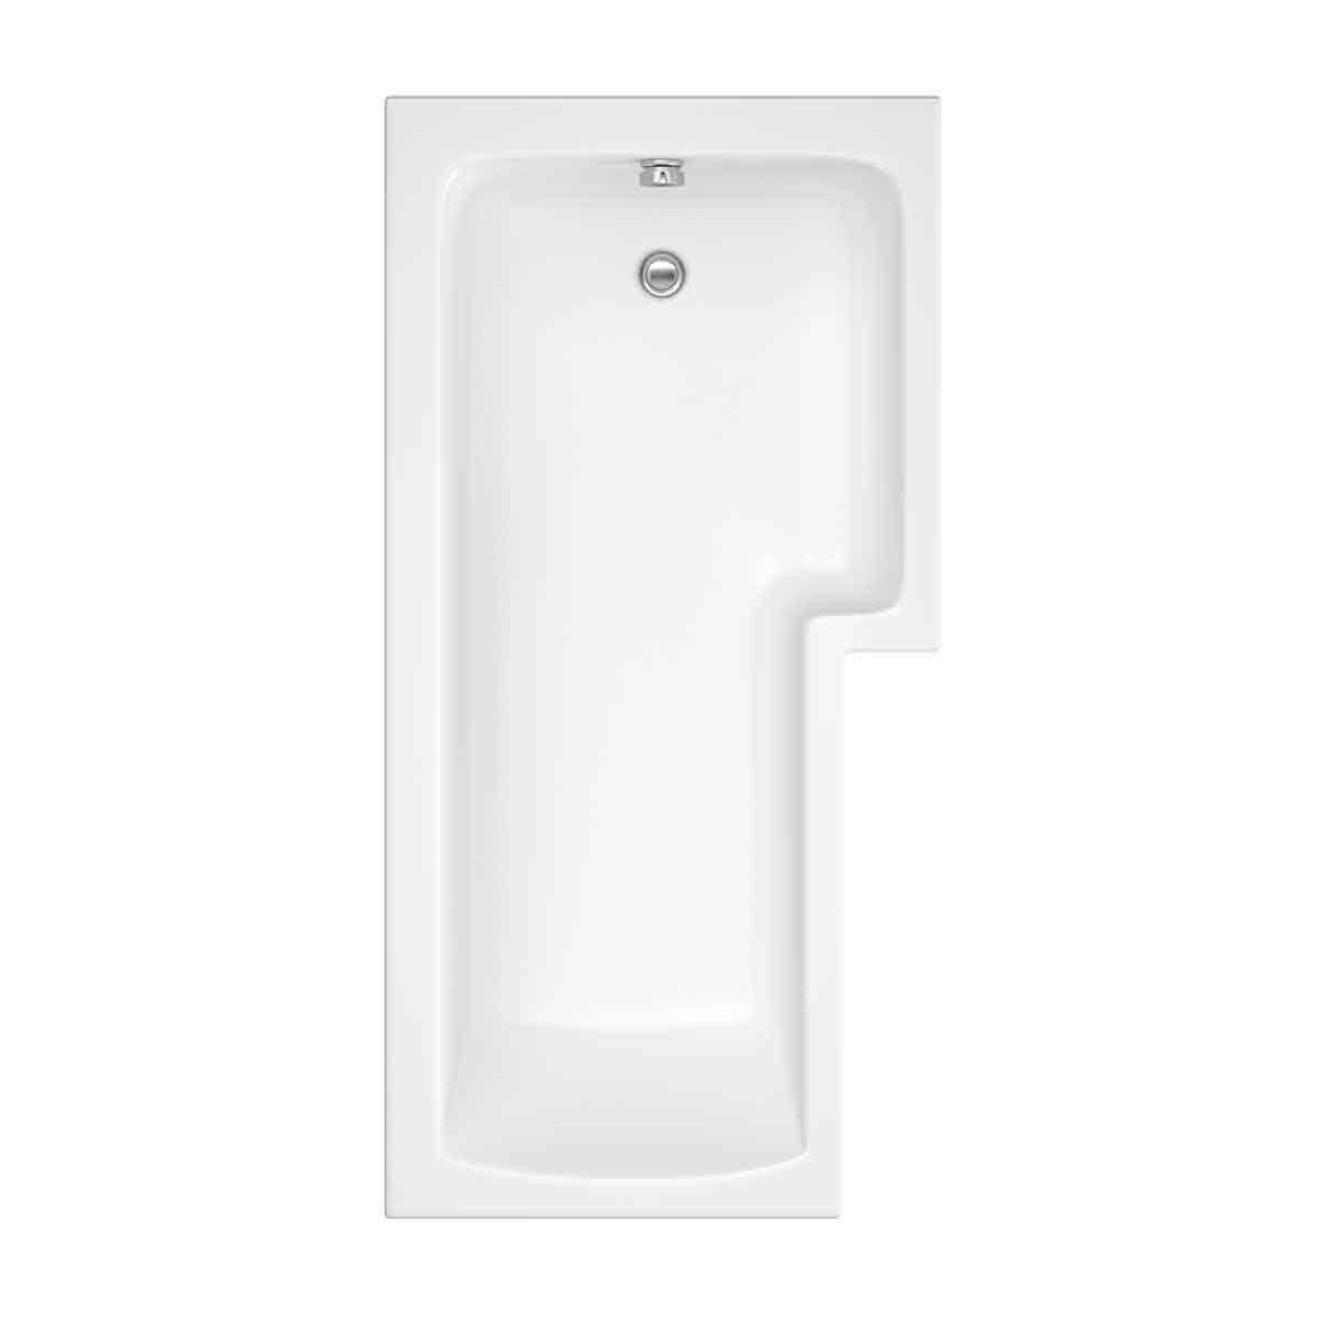 Solarna Trojancast L Shape Shower Bath 1700 x 850 x 700mm Right Hand